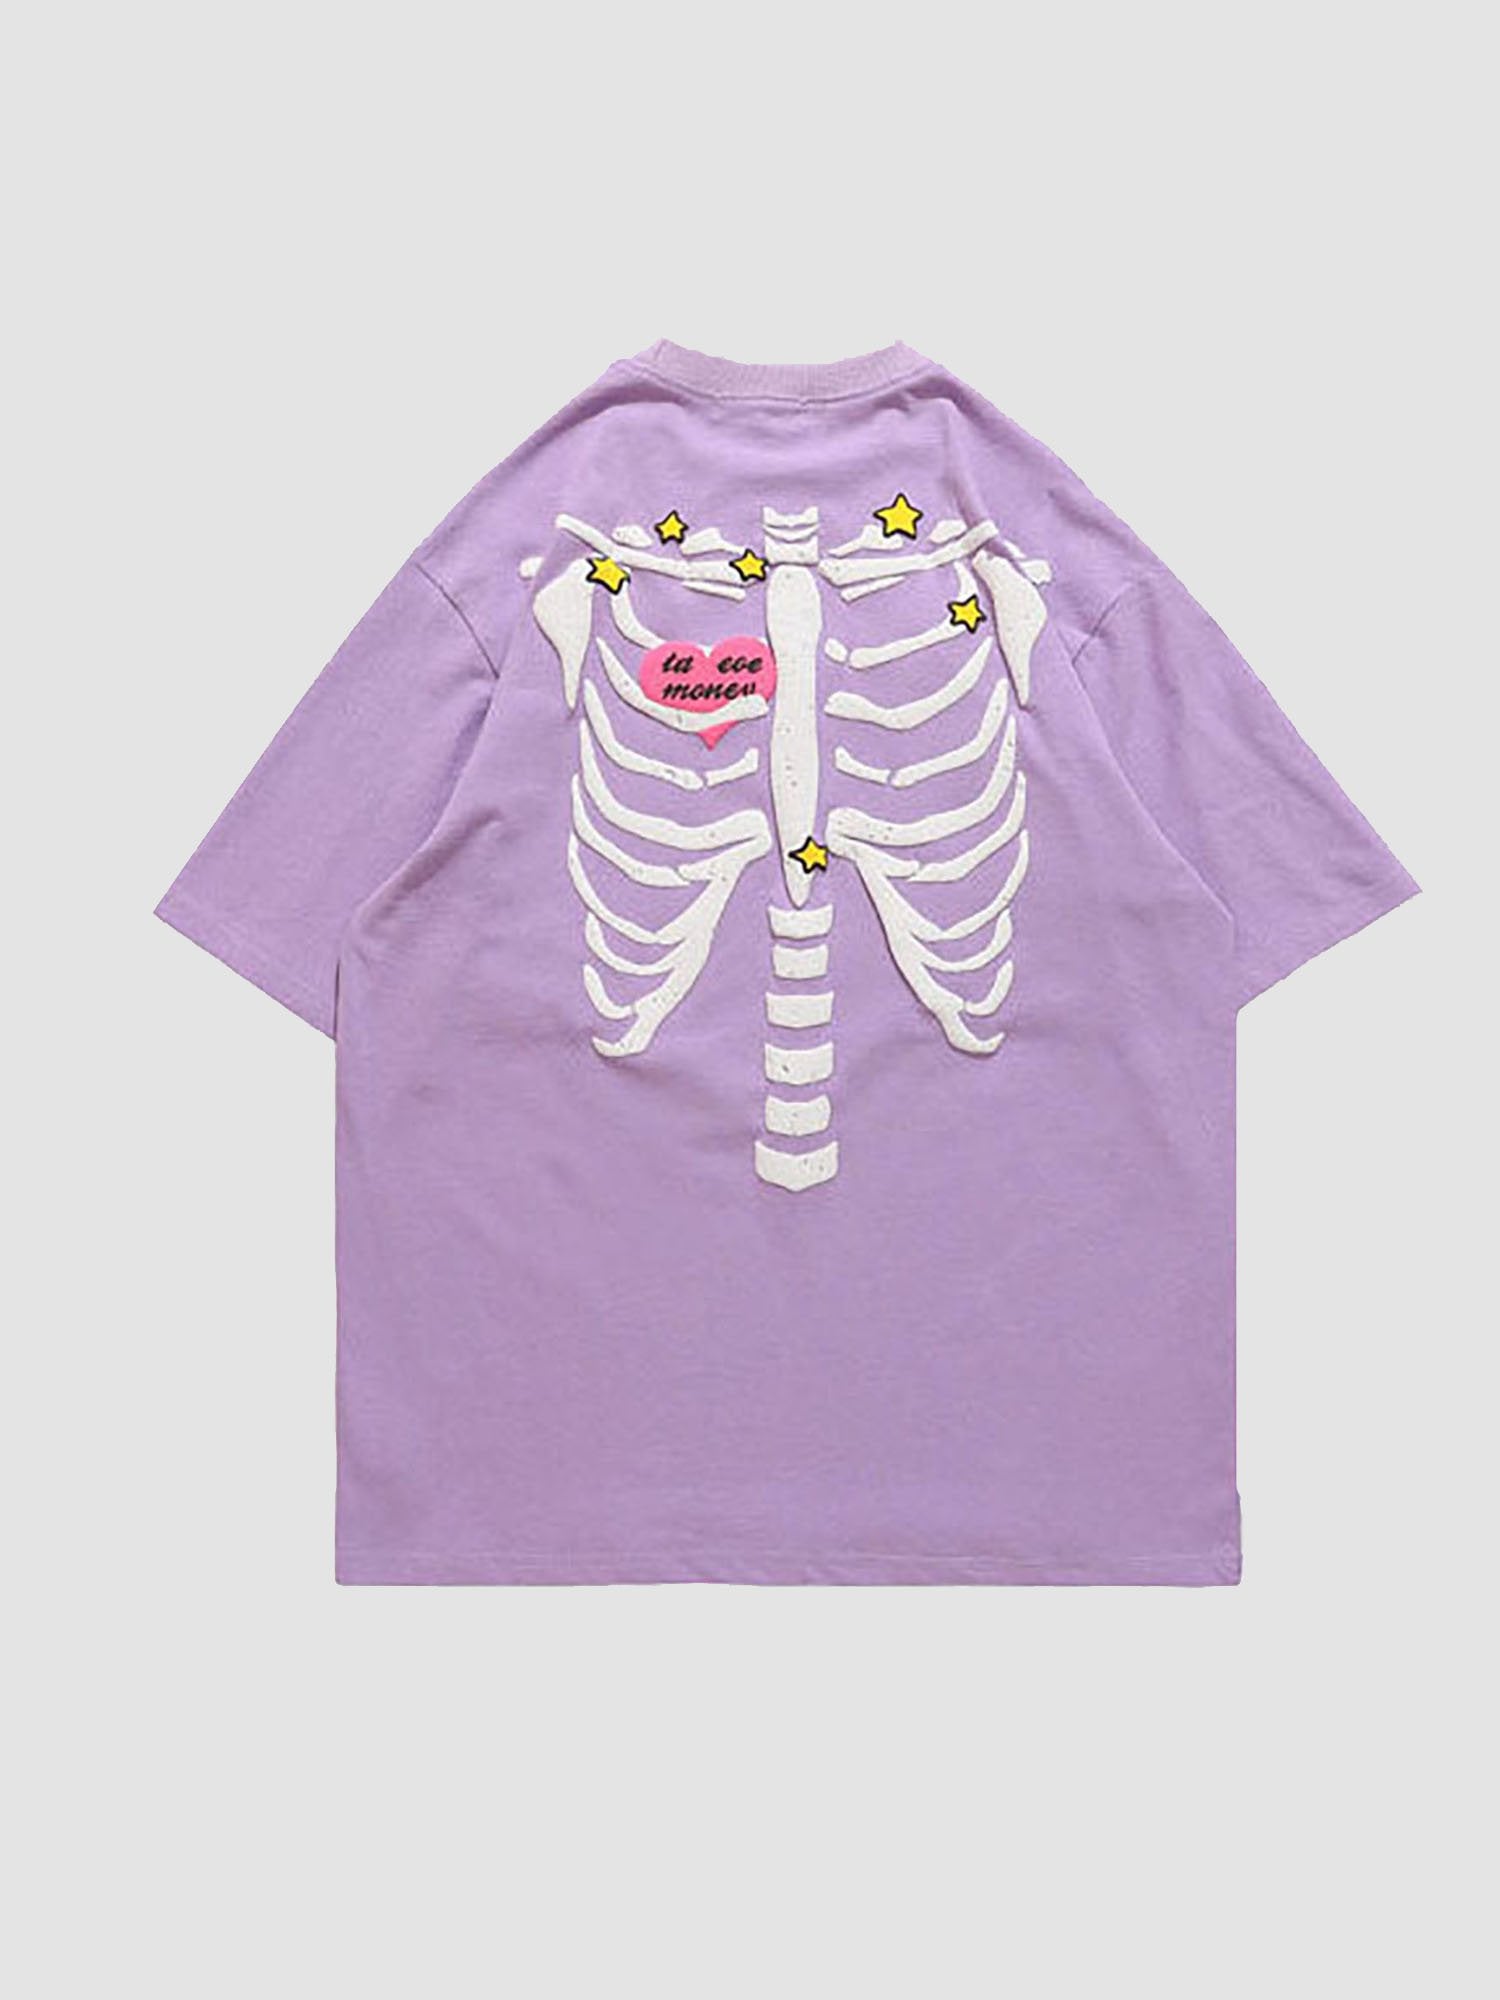 JUSTNOTAG T-shirt a maniche corte con stampa scheletro e lettere a cuore